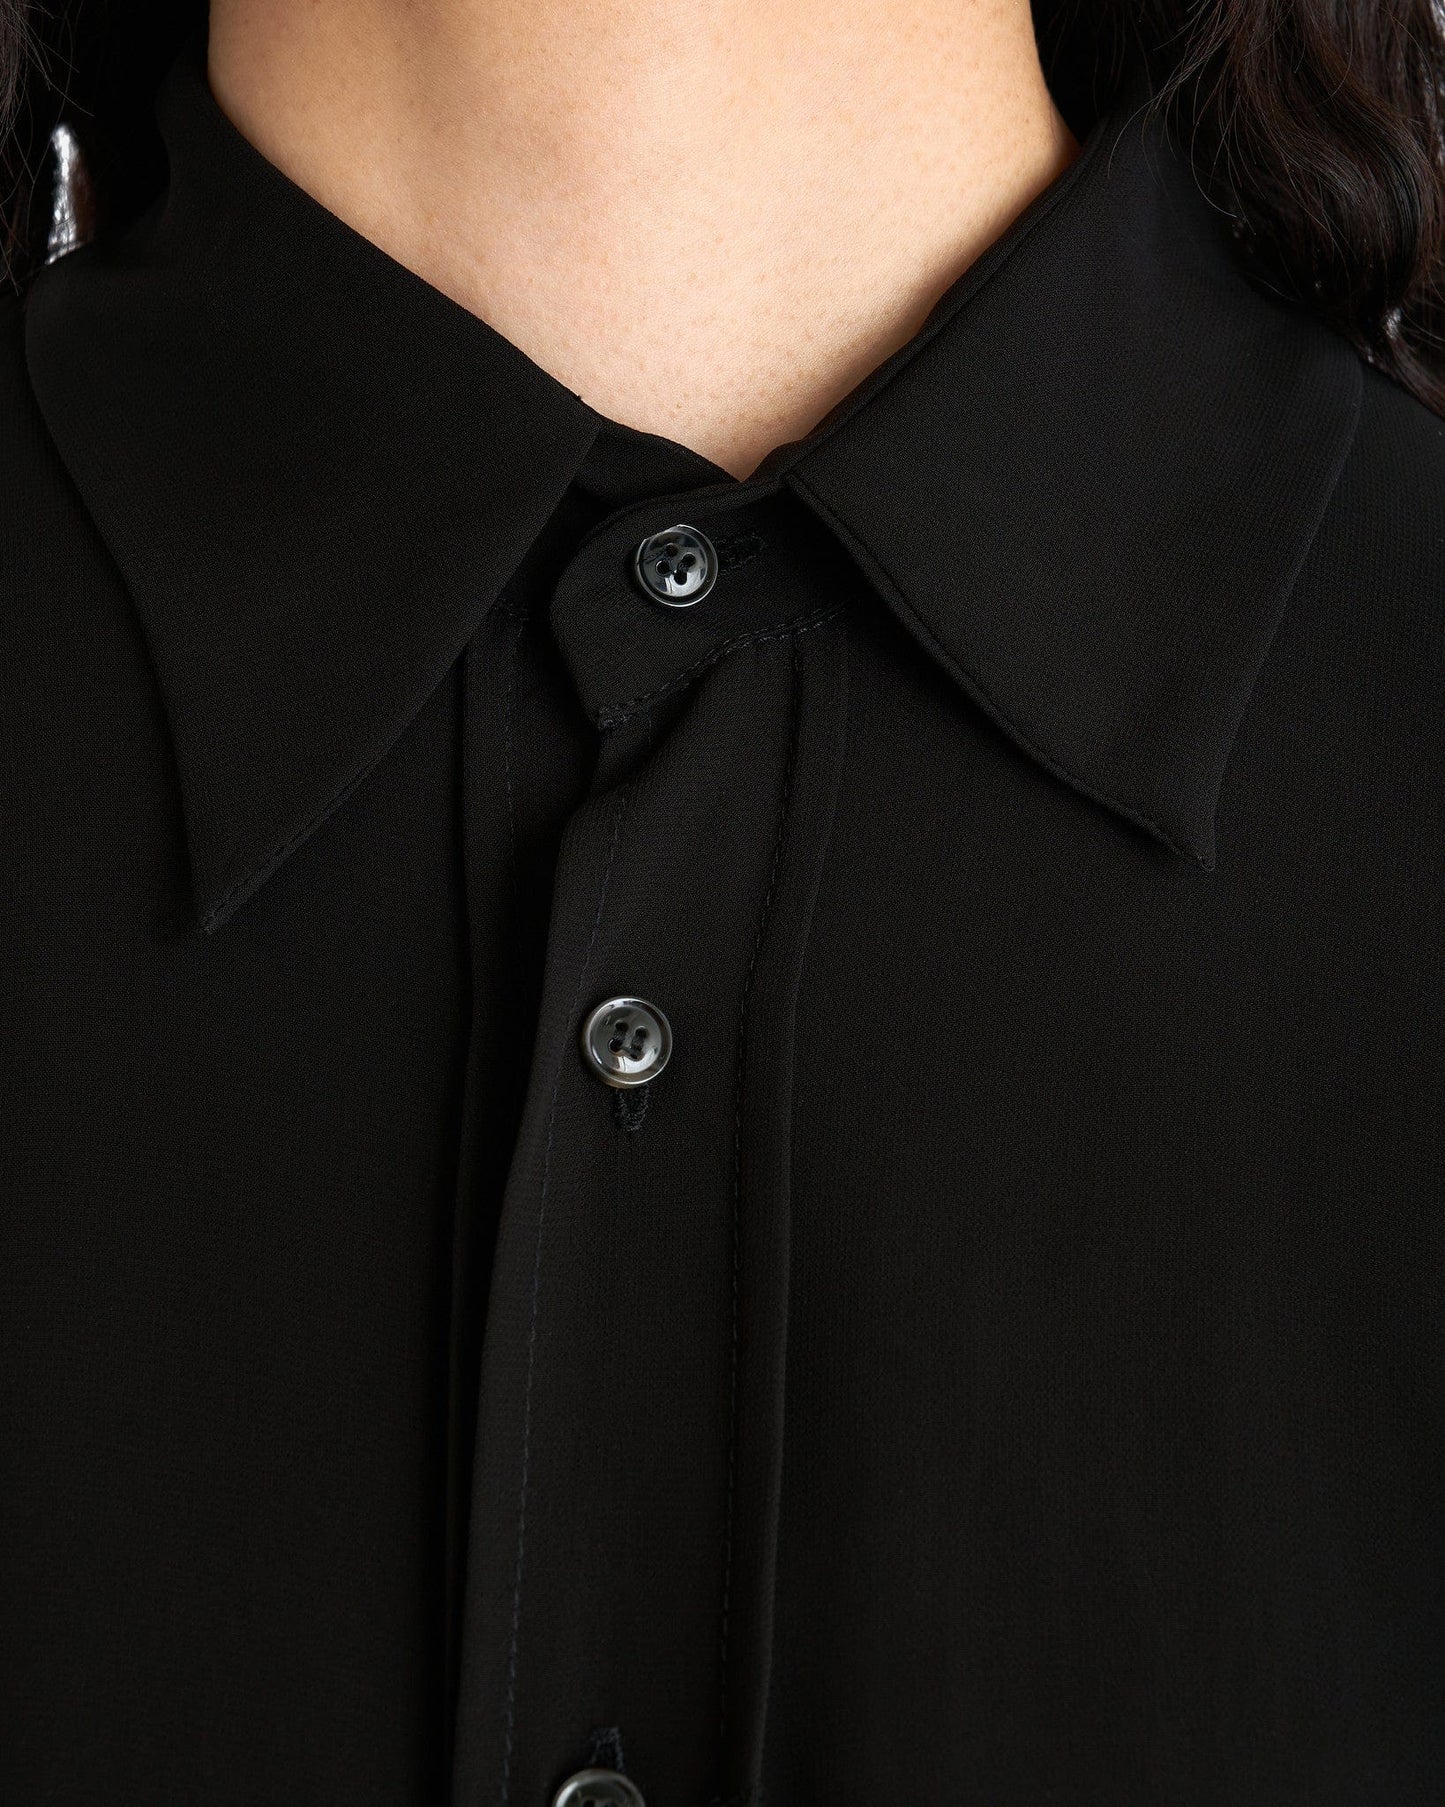 Edward Cuming Women T-Shirts Women's Saggy Draped Pocket Shirt in Black